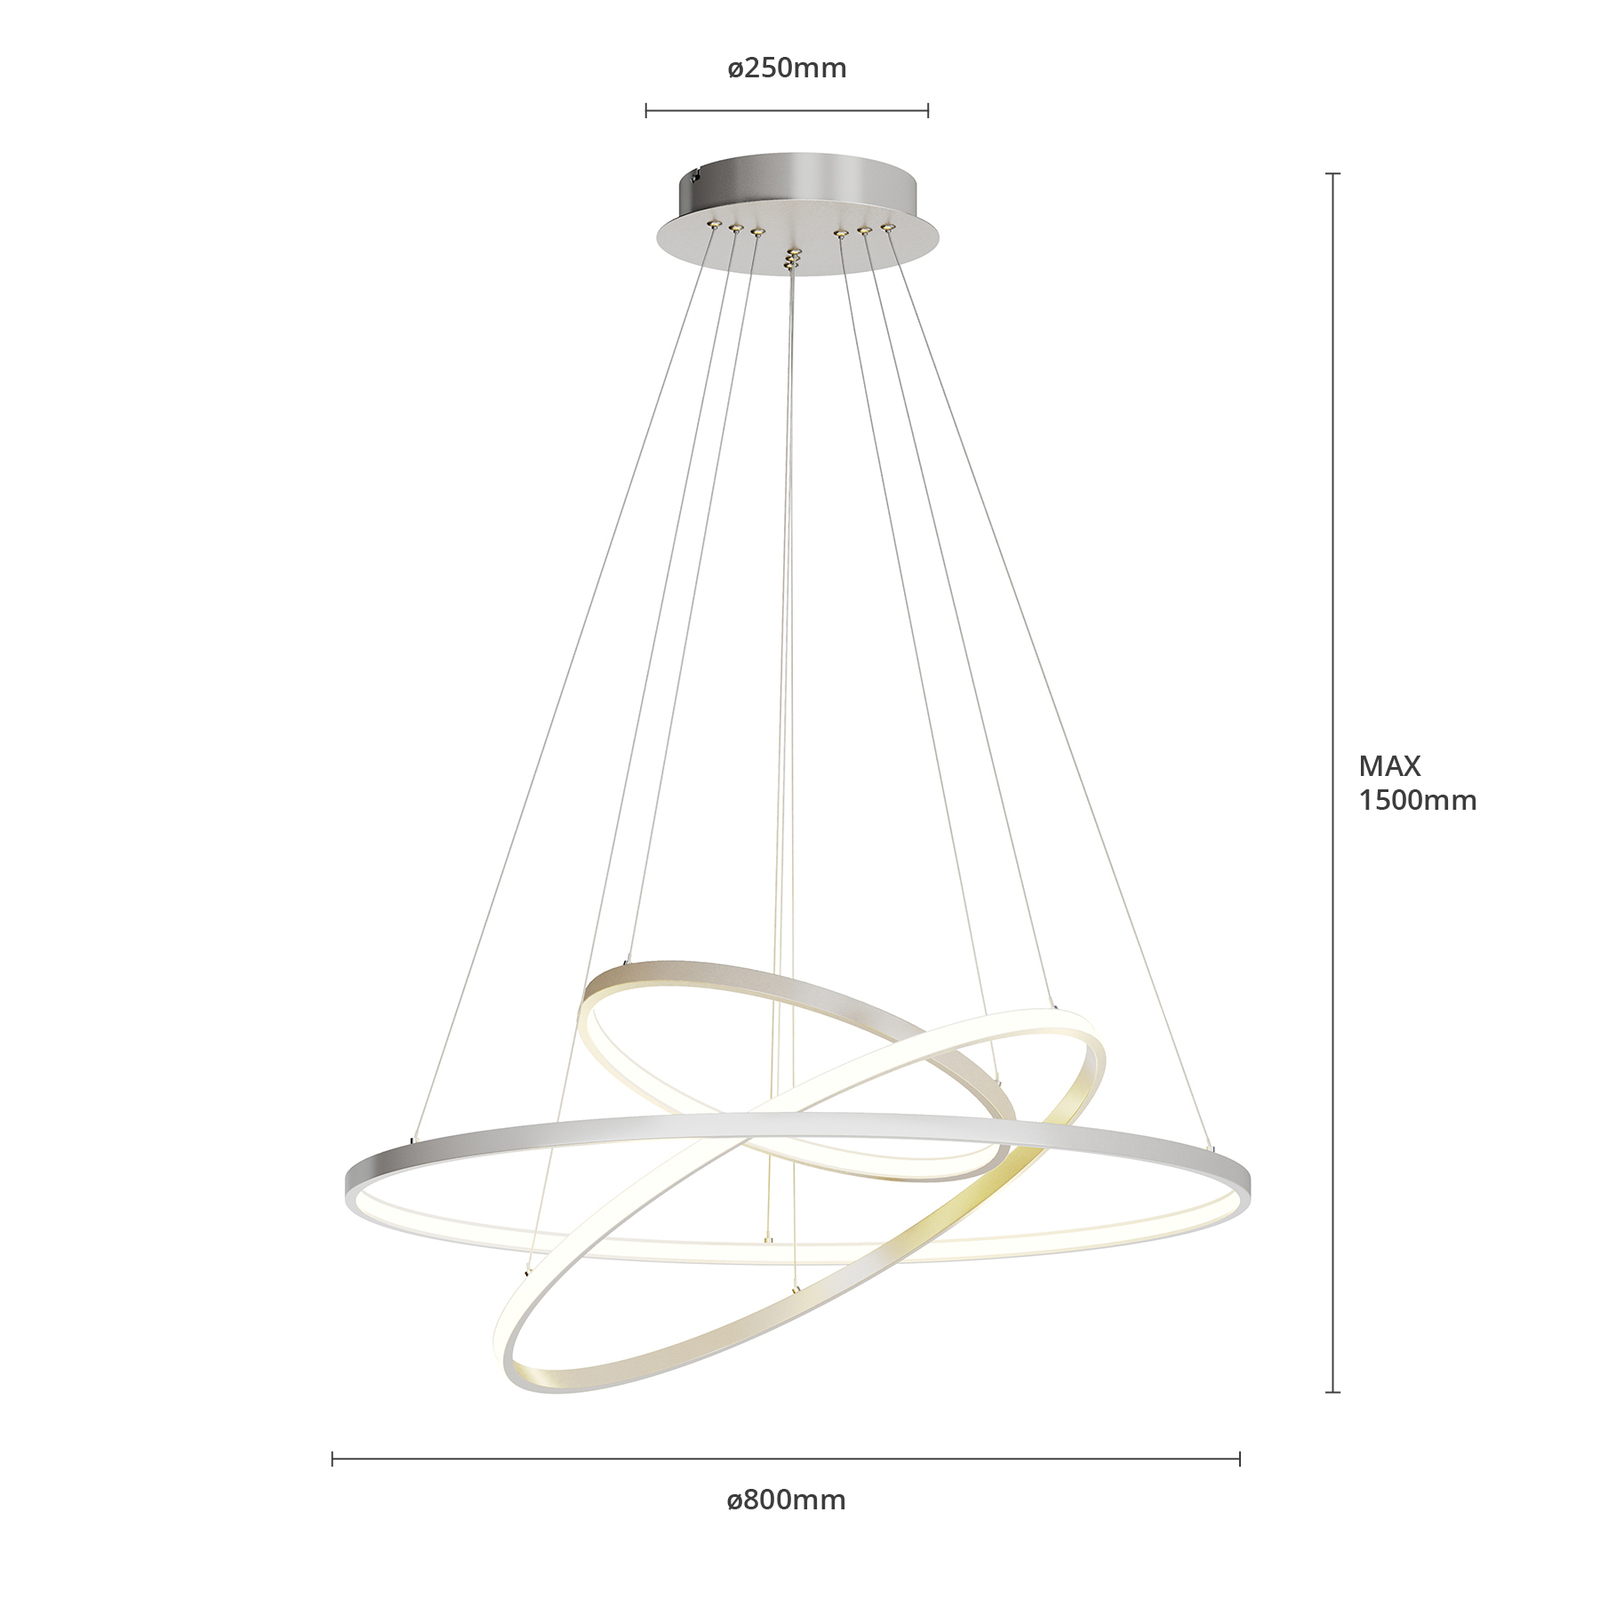 LED hanglamp Ezana gemaakt van drie ringen,nikkel